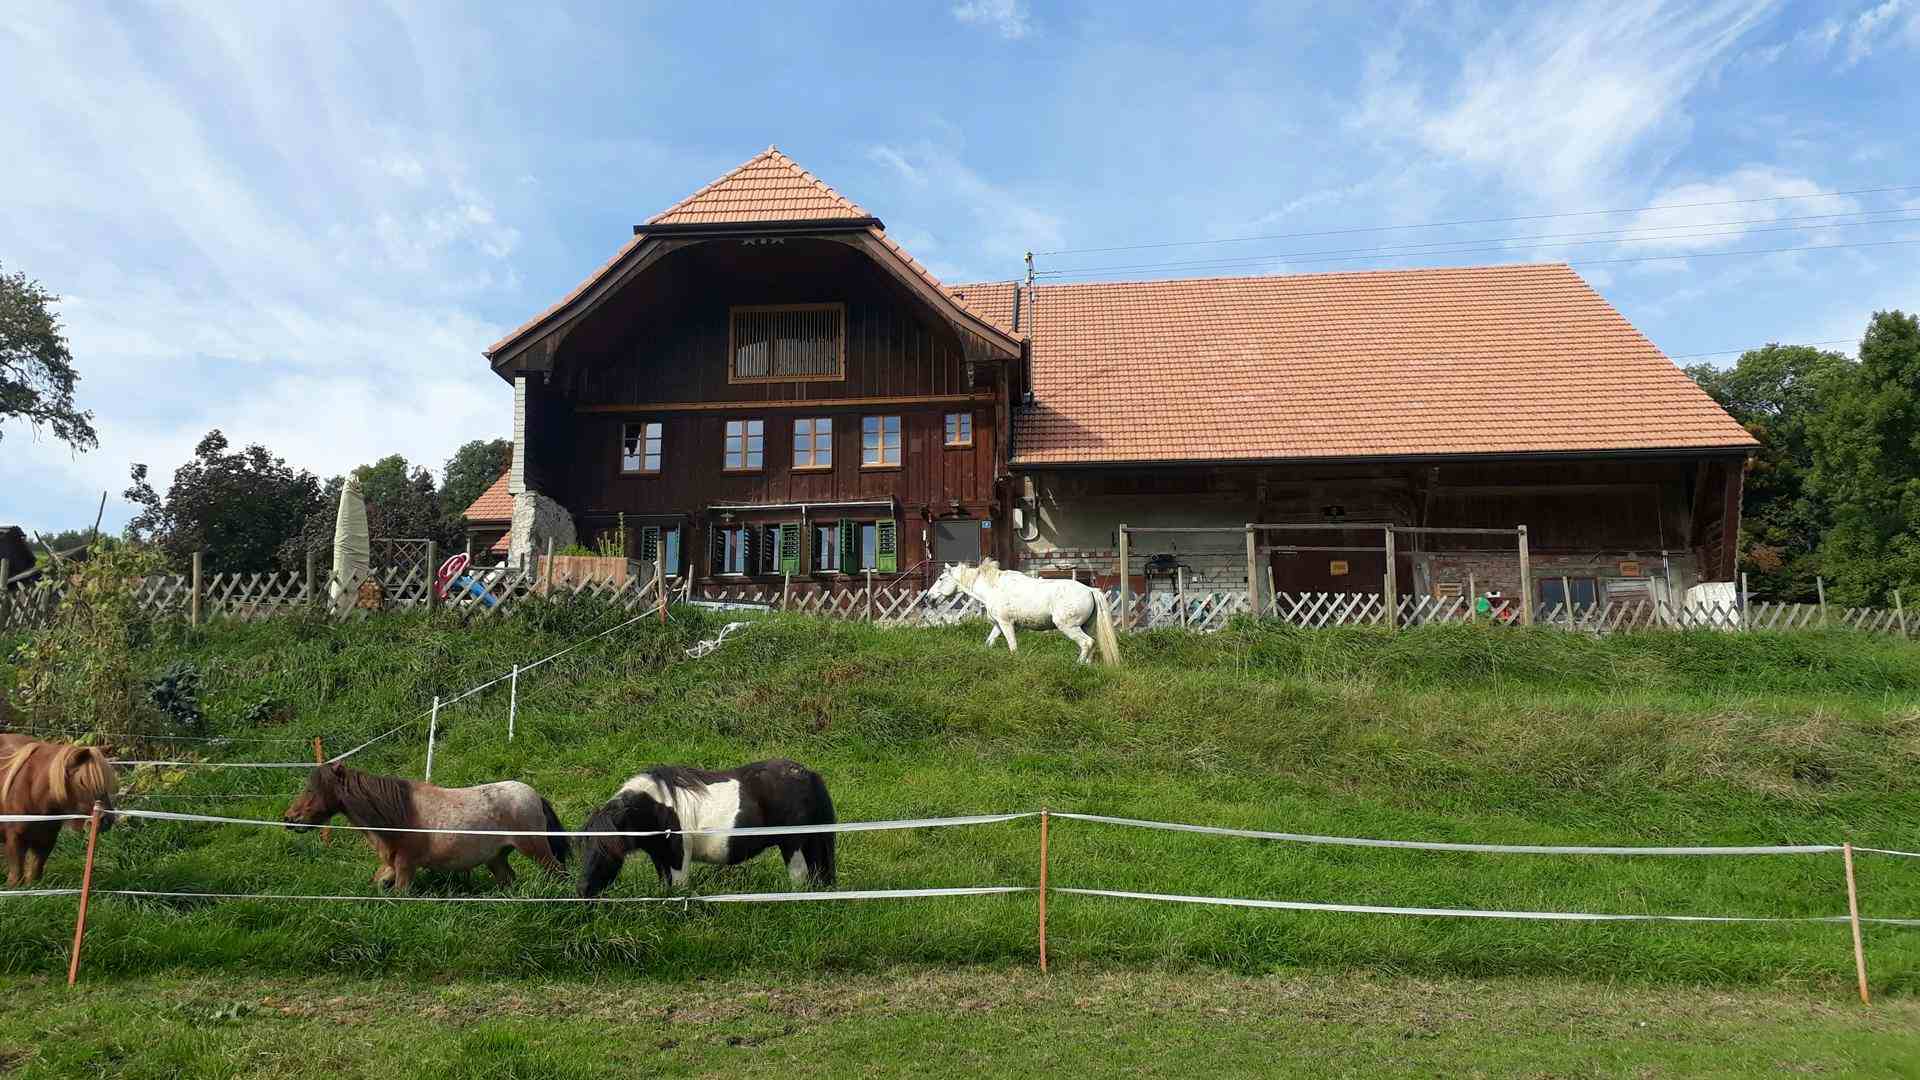 Husen, Produzent in Ennetbürgen Kanton Nidwalden in der Schweiz